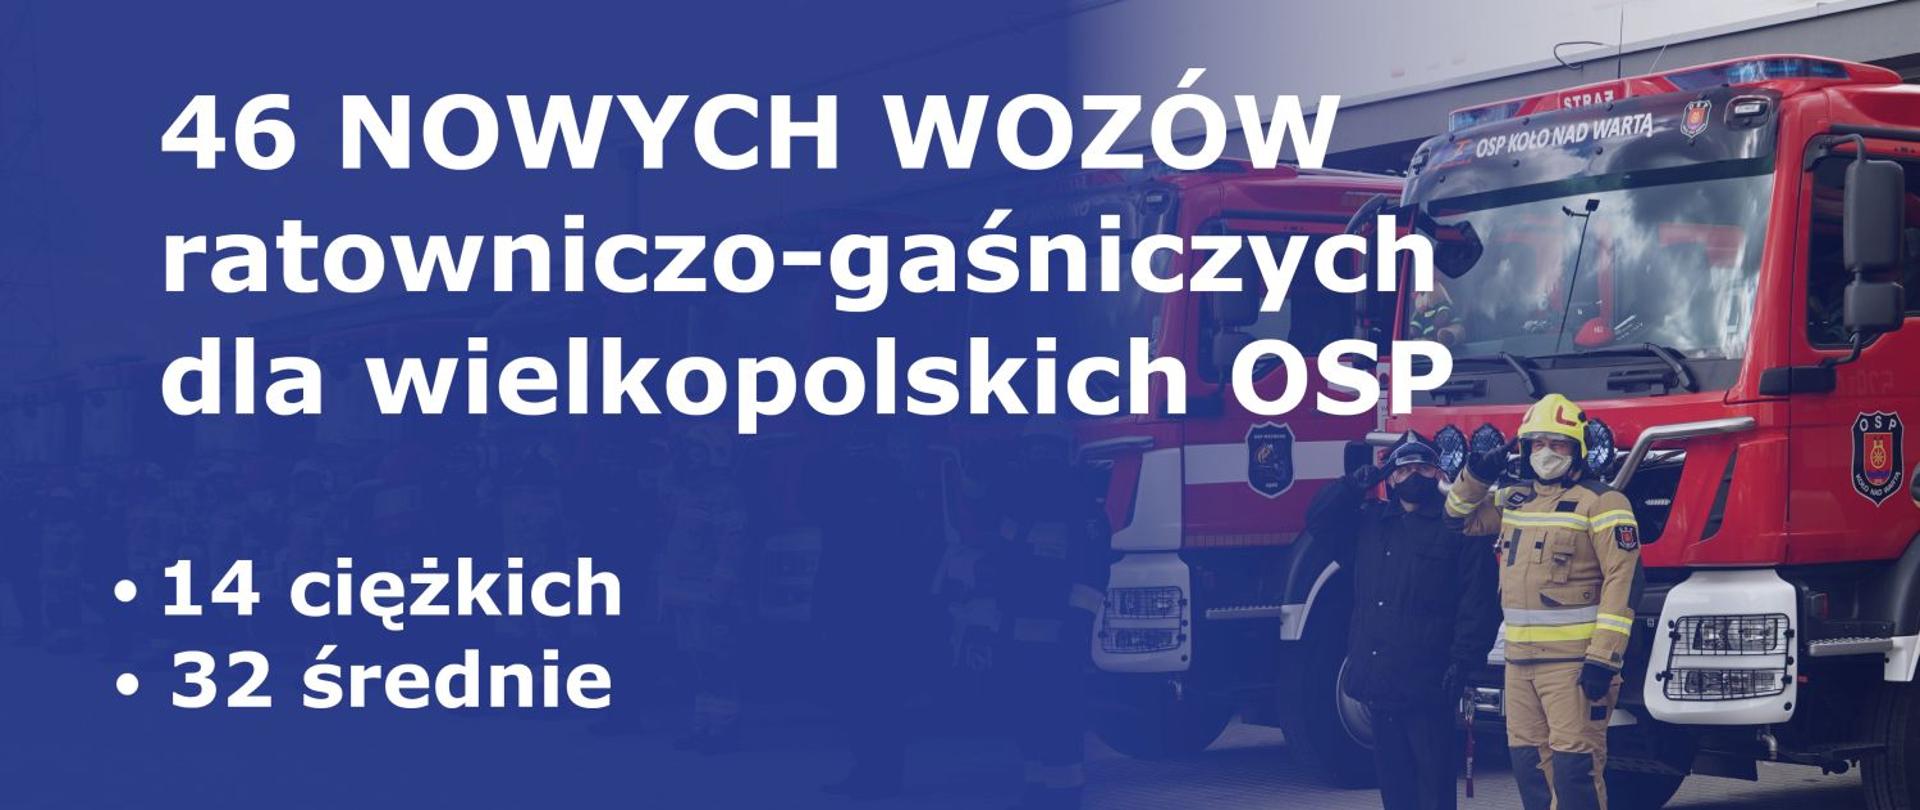 na niebieskim tle napis: 46 nowych wozów ratowniczo - gaśniczych dla wielkopolskich osp 14 ciężkich 32 średnie, w tle przed samochodami strażackimi stoją salutujący strażacy, 